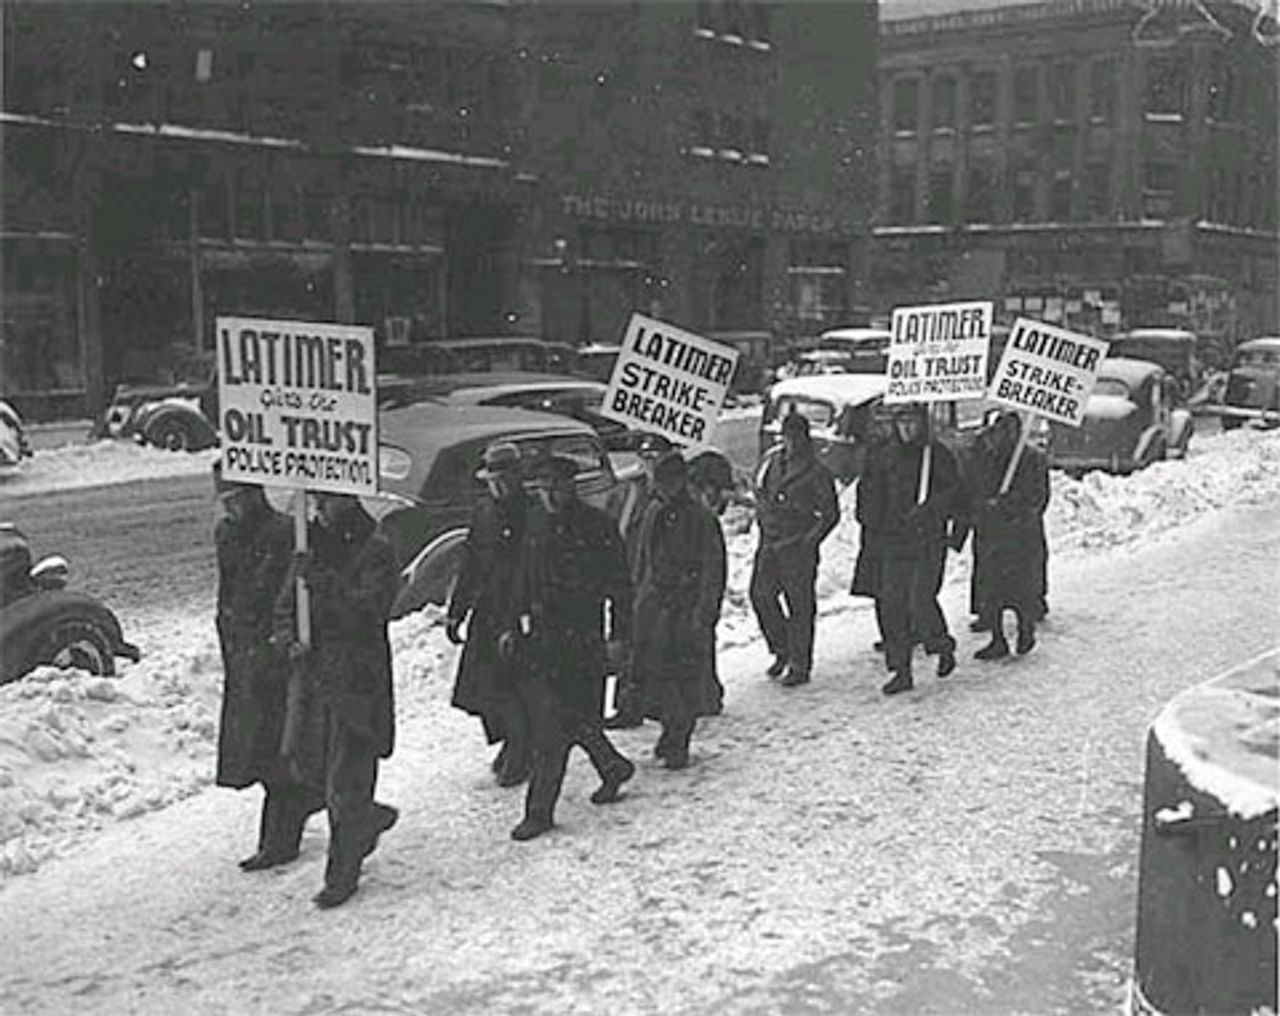 1937: Streikposten protestieren vor der Stadthalle in Minneapolis gegen den FLP-Bürgermeister Thomas E. Latimer